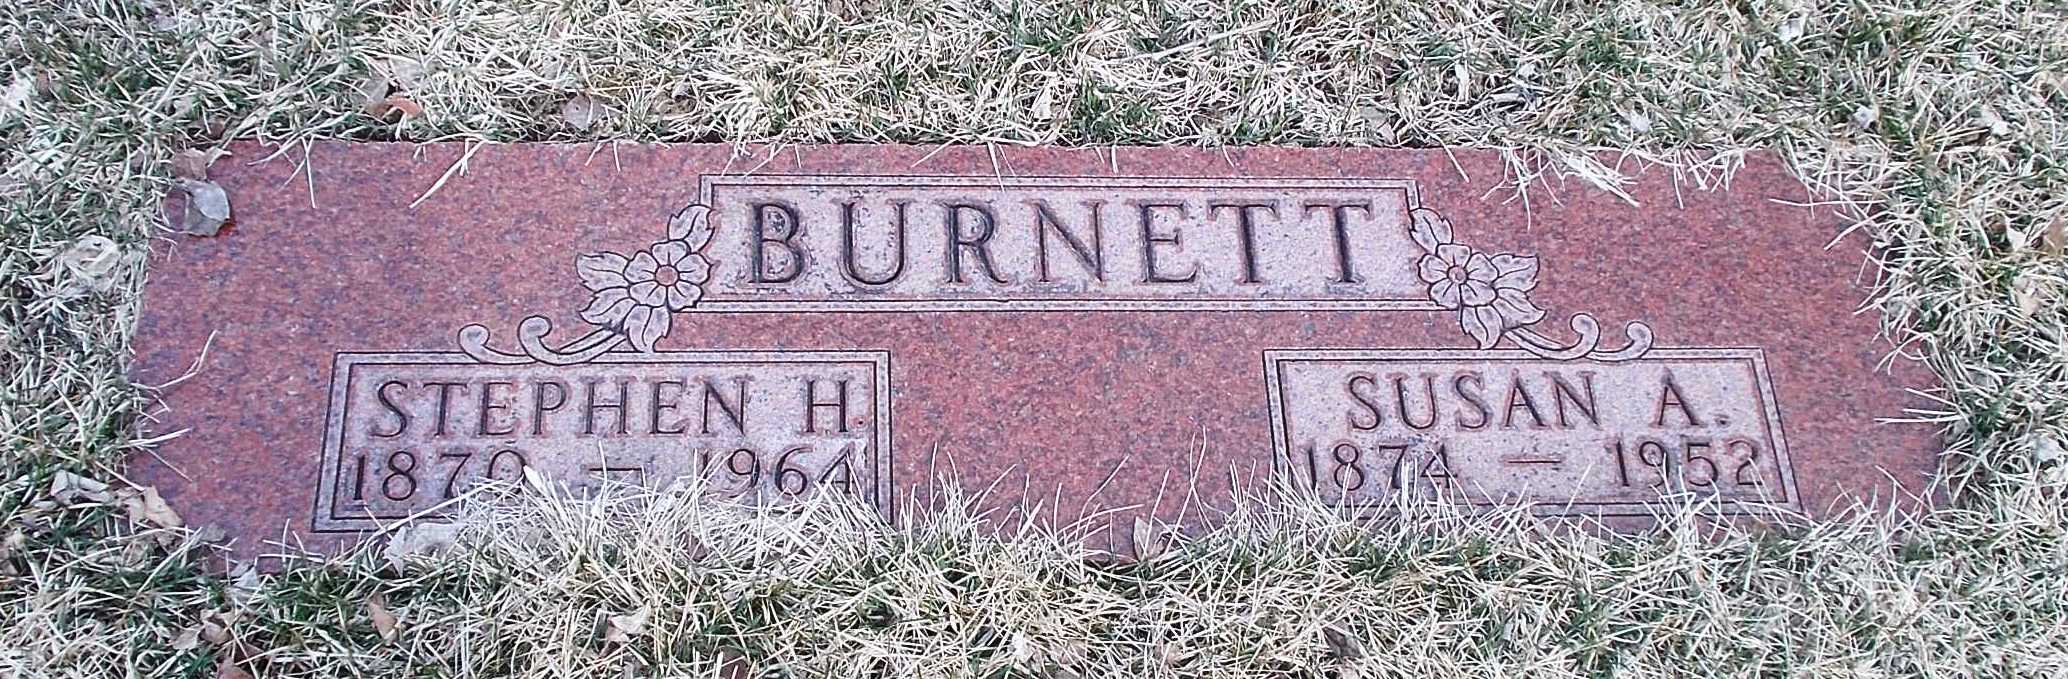 Stephen H Burnett